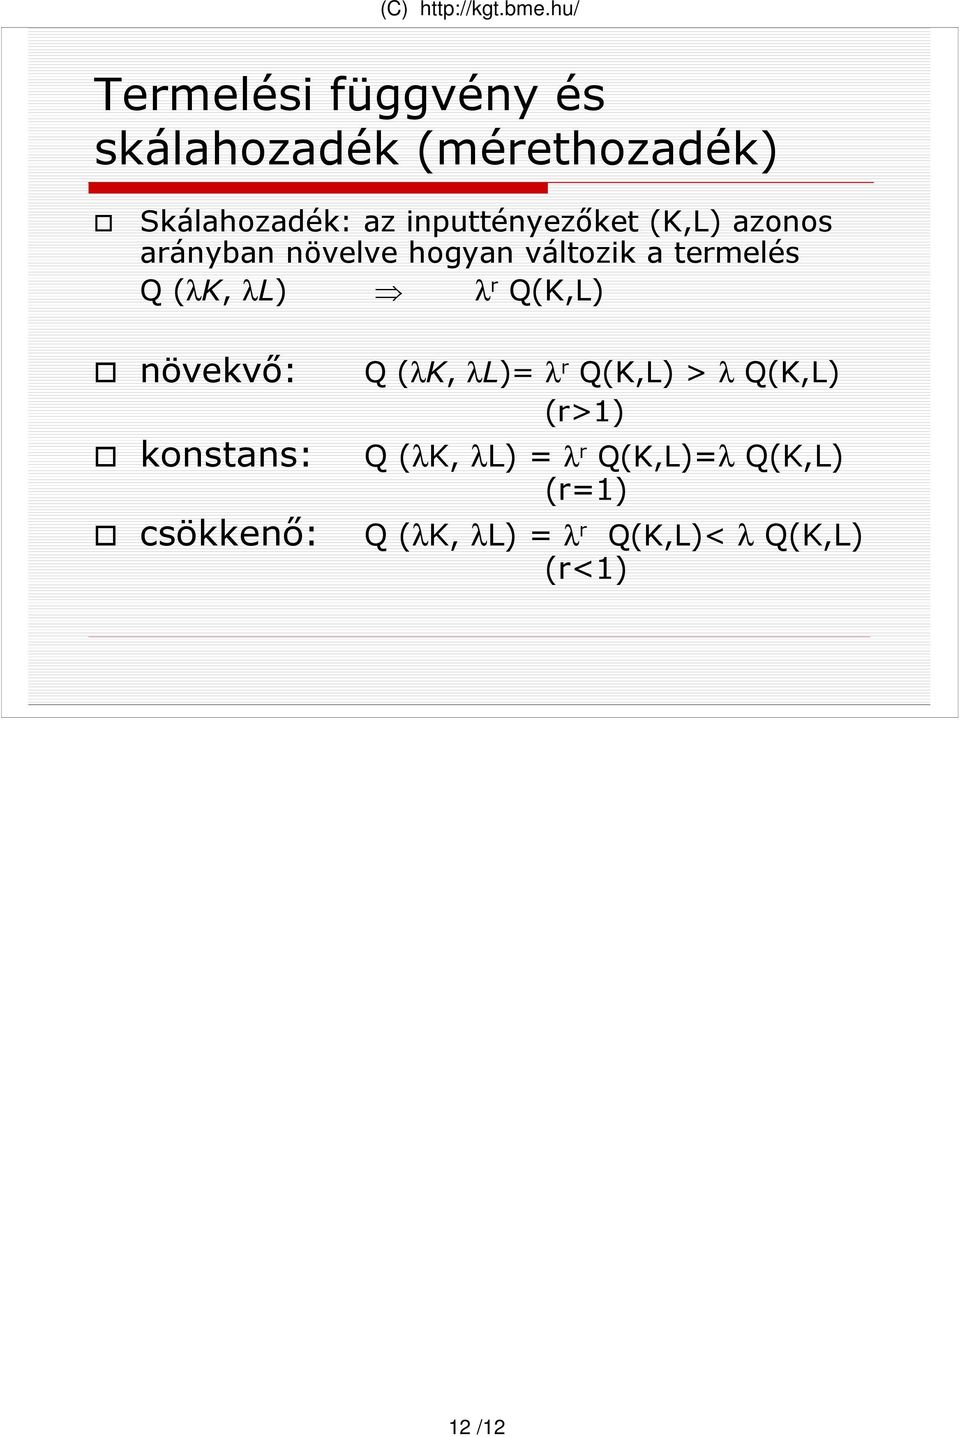 Q (λ, λ) λ r Q(,) növekvı: konstans: Q (λ, λ)= λ r Q(,) > λ Q(,) (r>1) Q